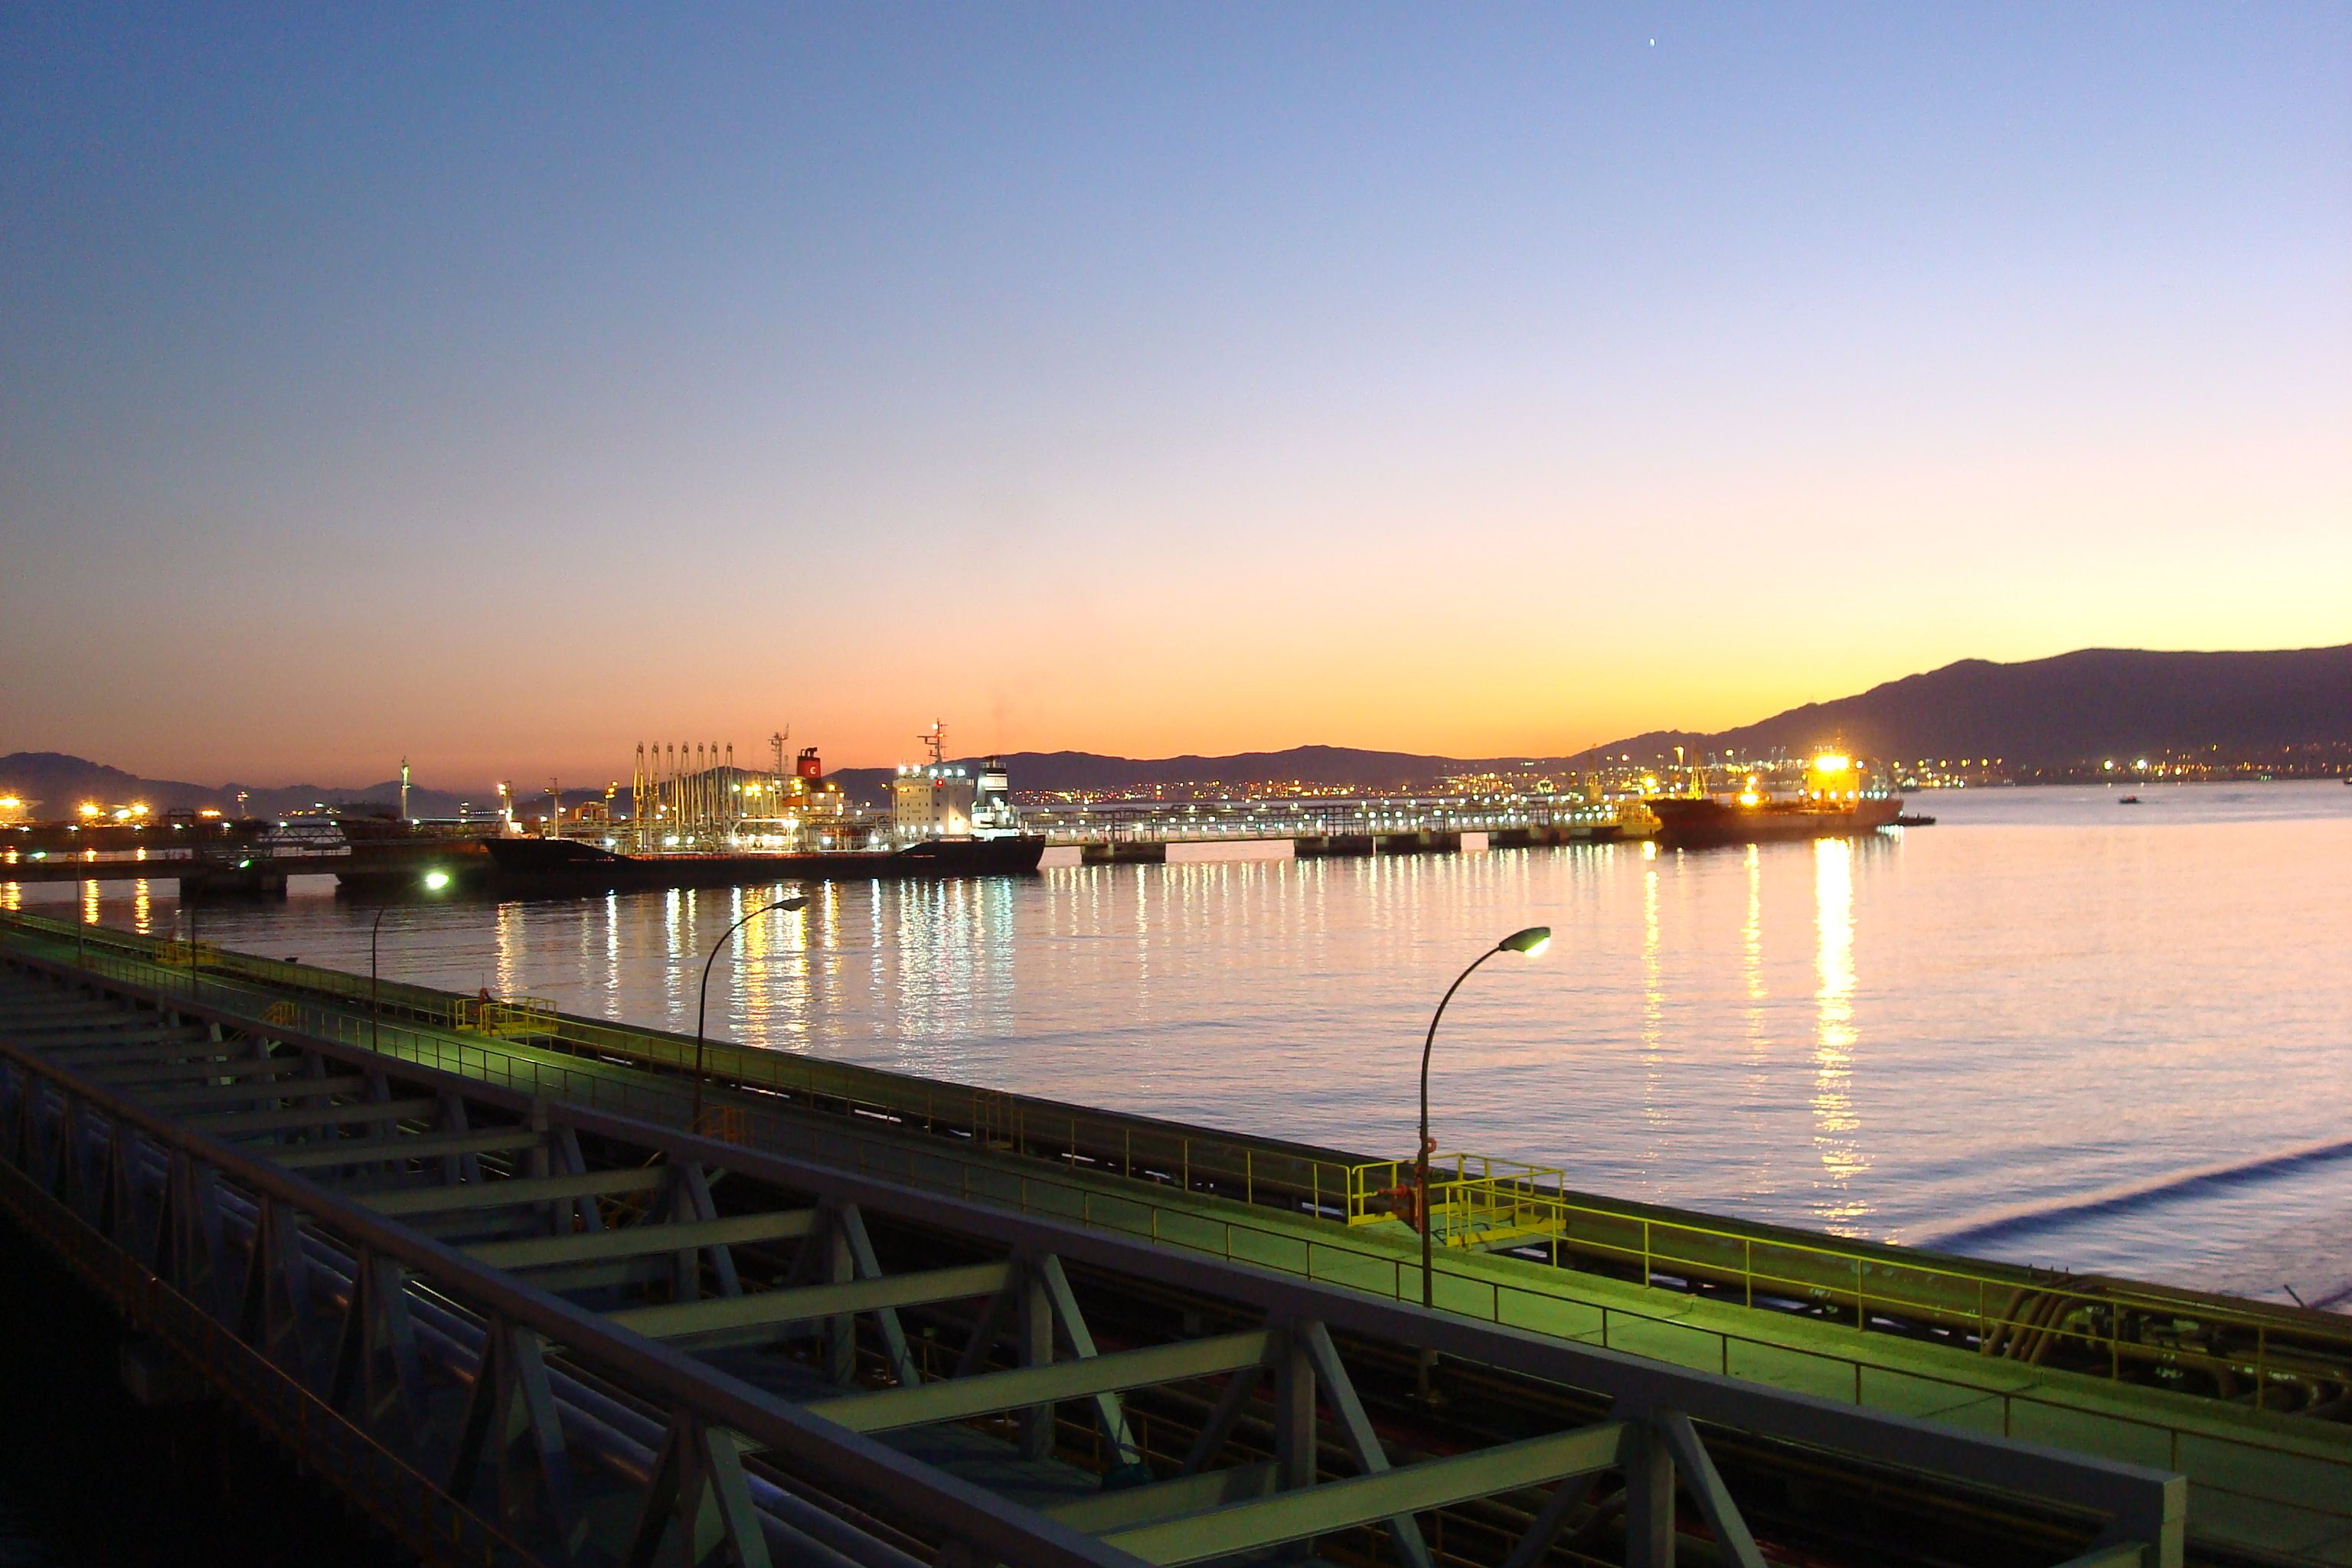 Terminal marítima del Parque Energético de Cepsa, cuya certificación se ha renovado.